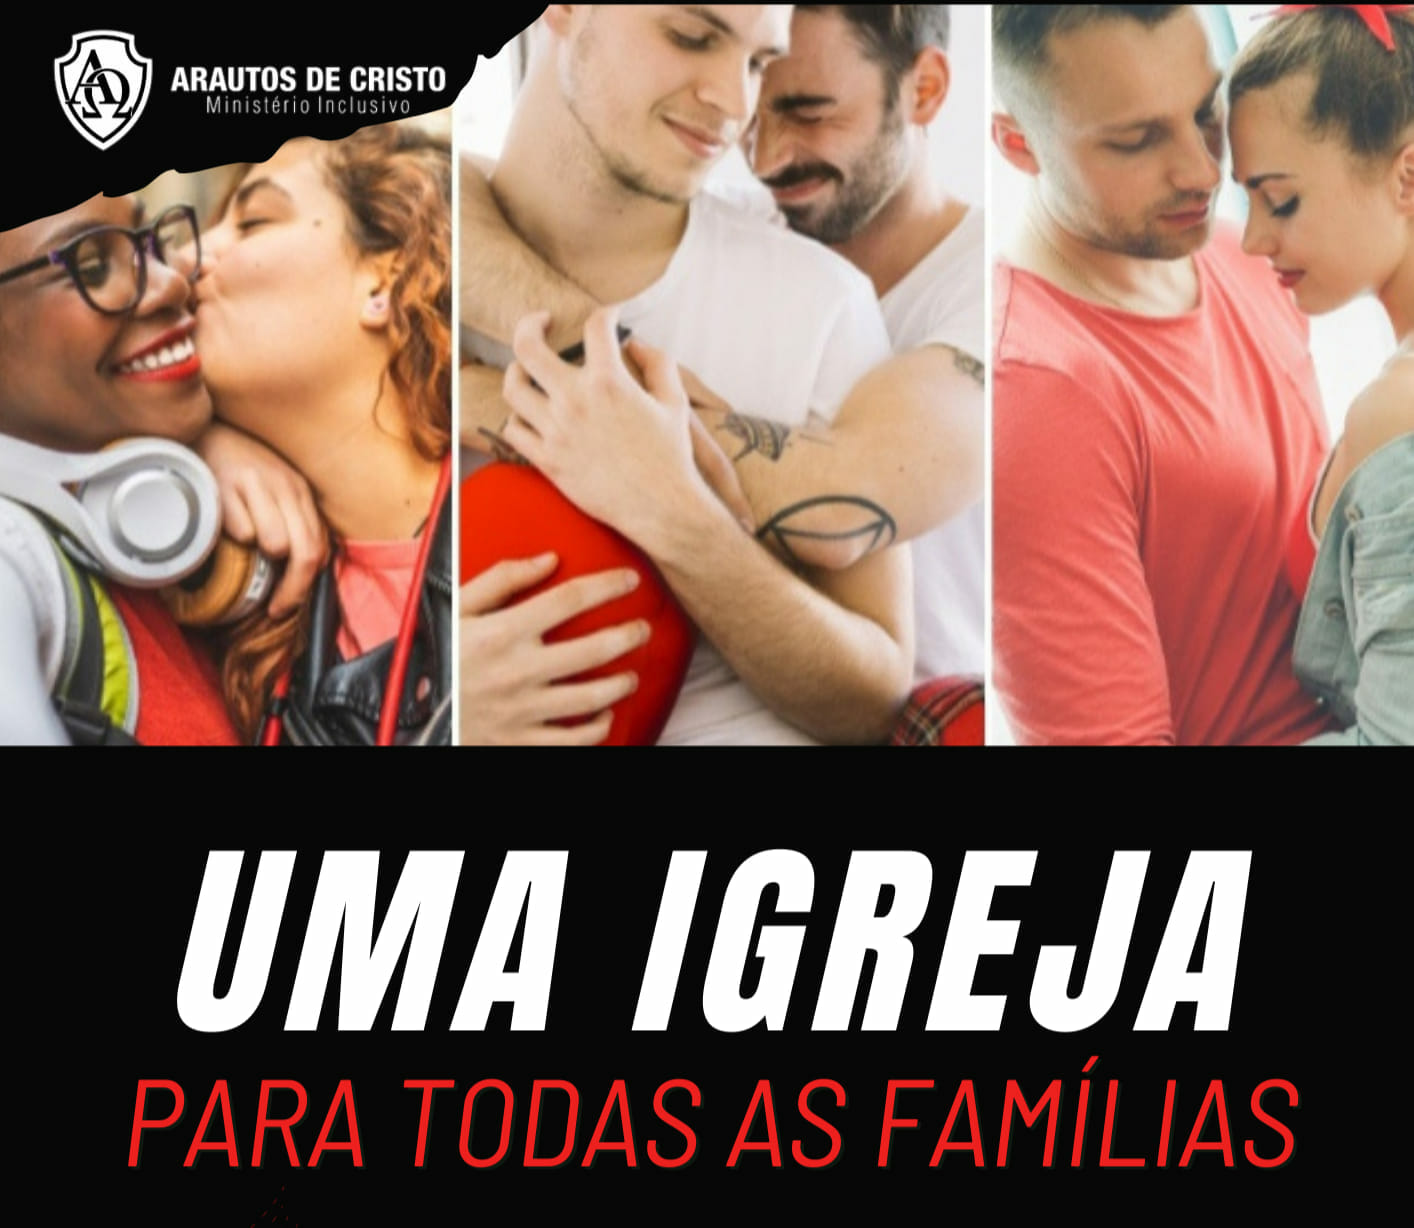 Igreja Evangélica que inclui LGBT chega em São José do Rio Preto